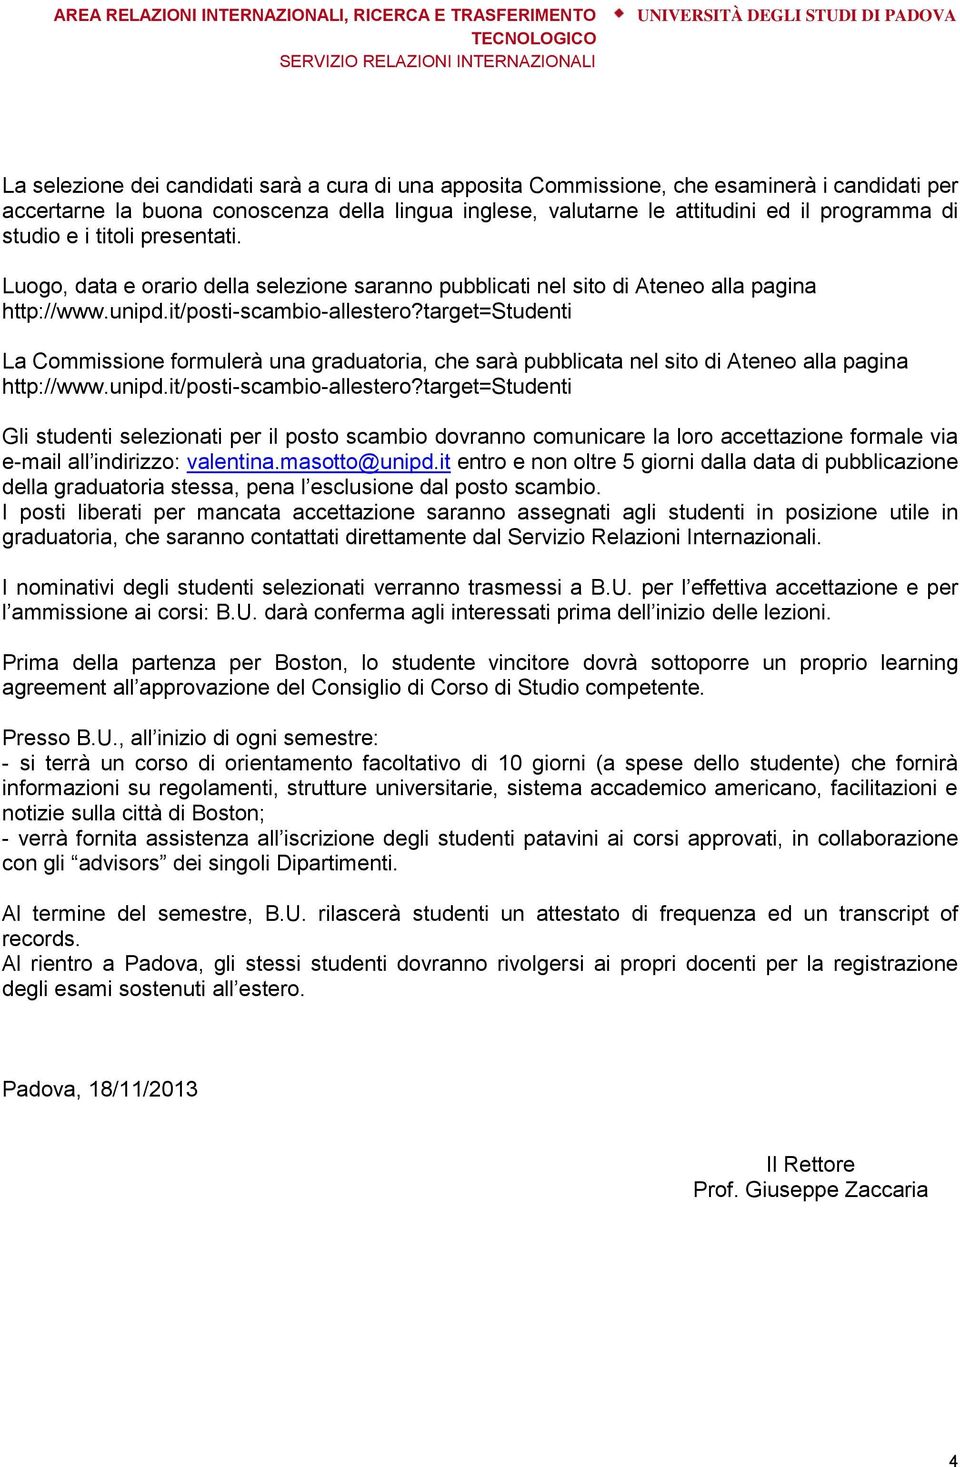 target=studenti La Commissione formulerà una graduatoria, che sarà pubblicata nel sito di Ateneo alla pagina http://www.unipd.it/posti-scambio-allestero?